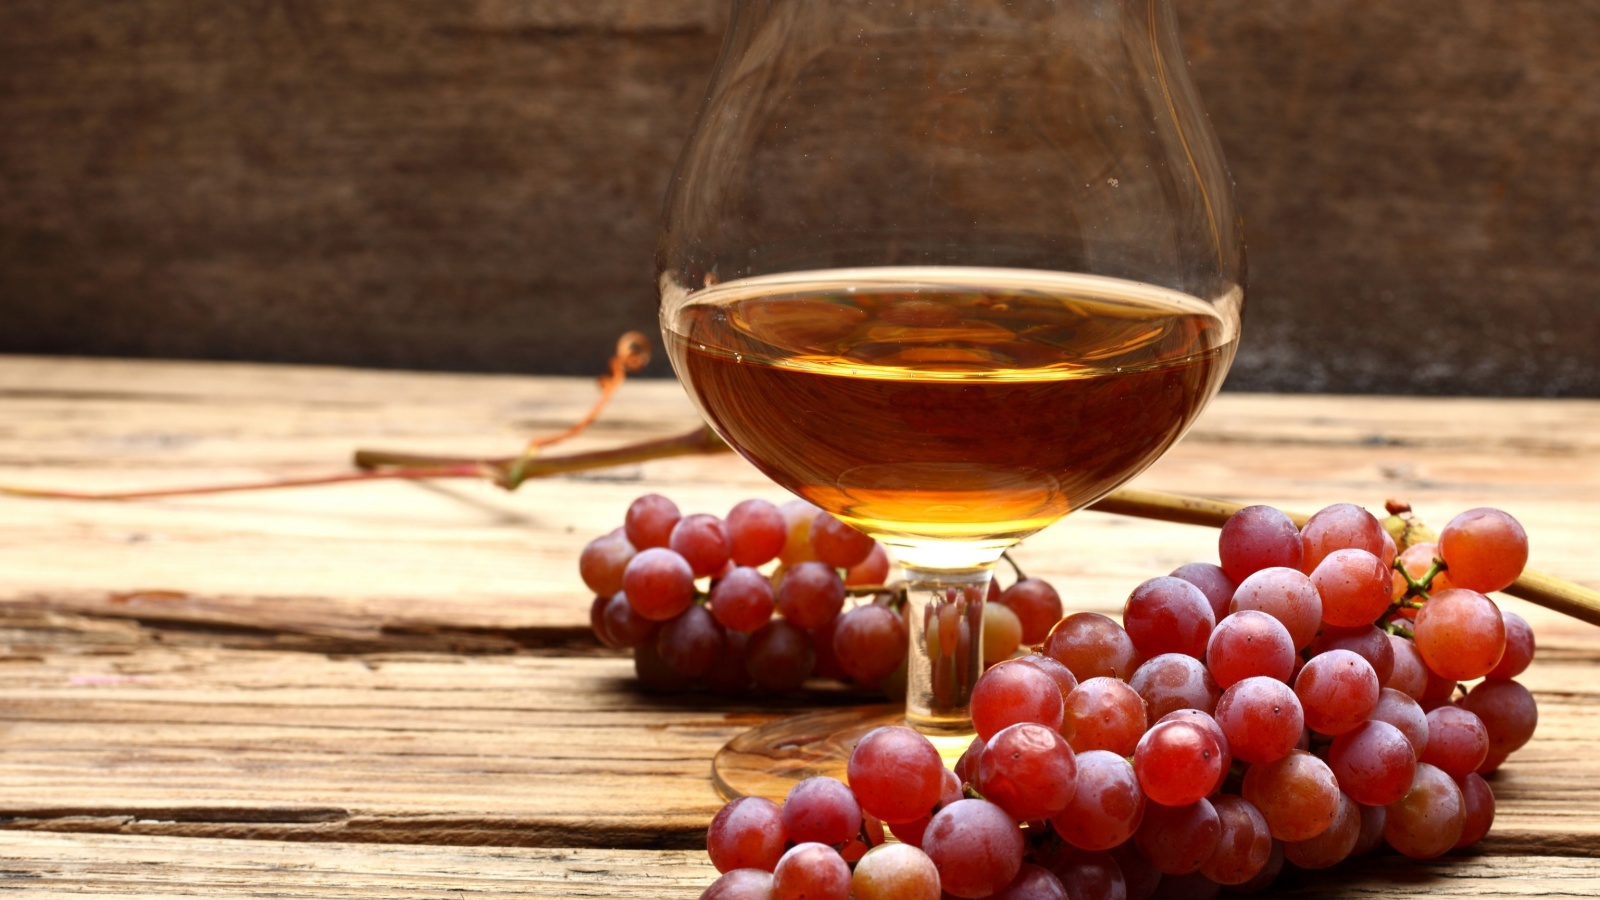 Cognac and grapes wallpaper 1600x900